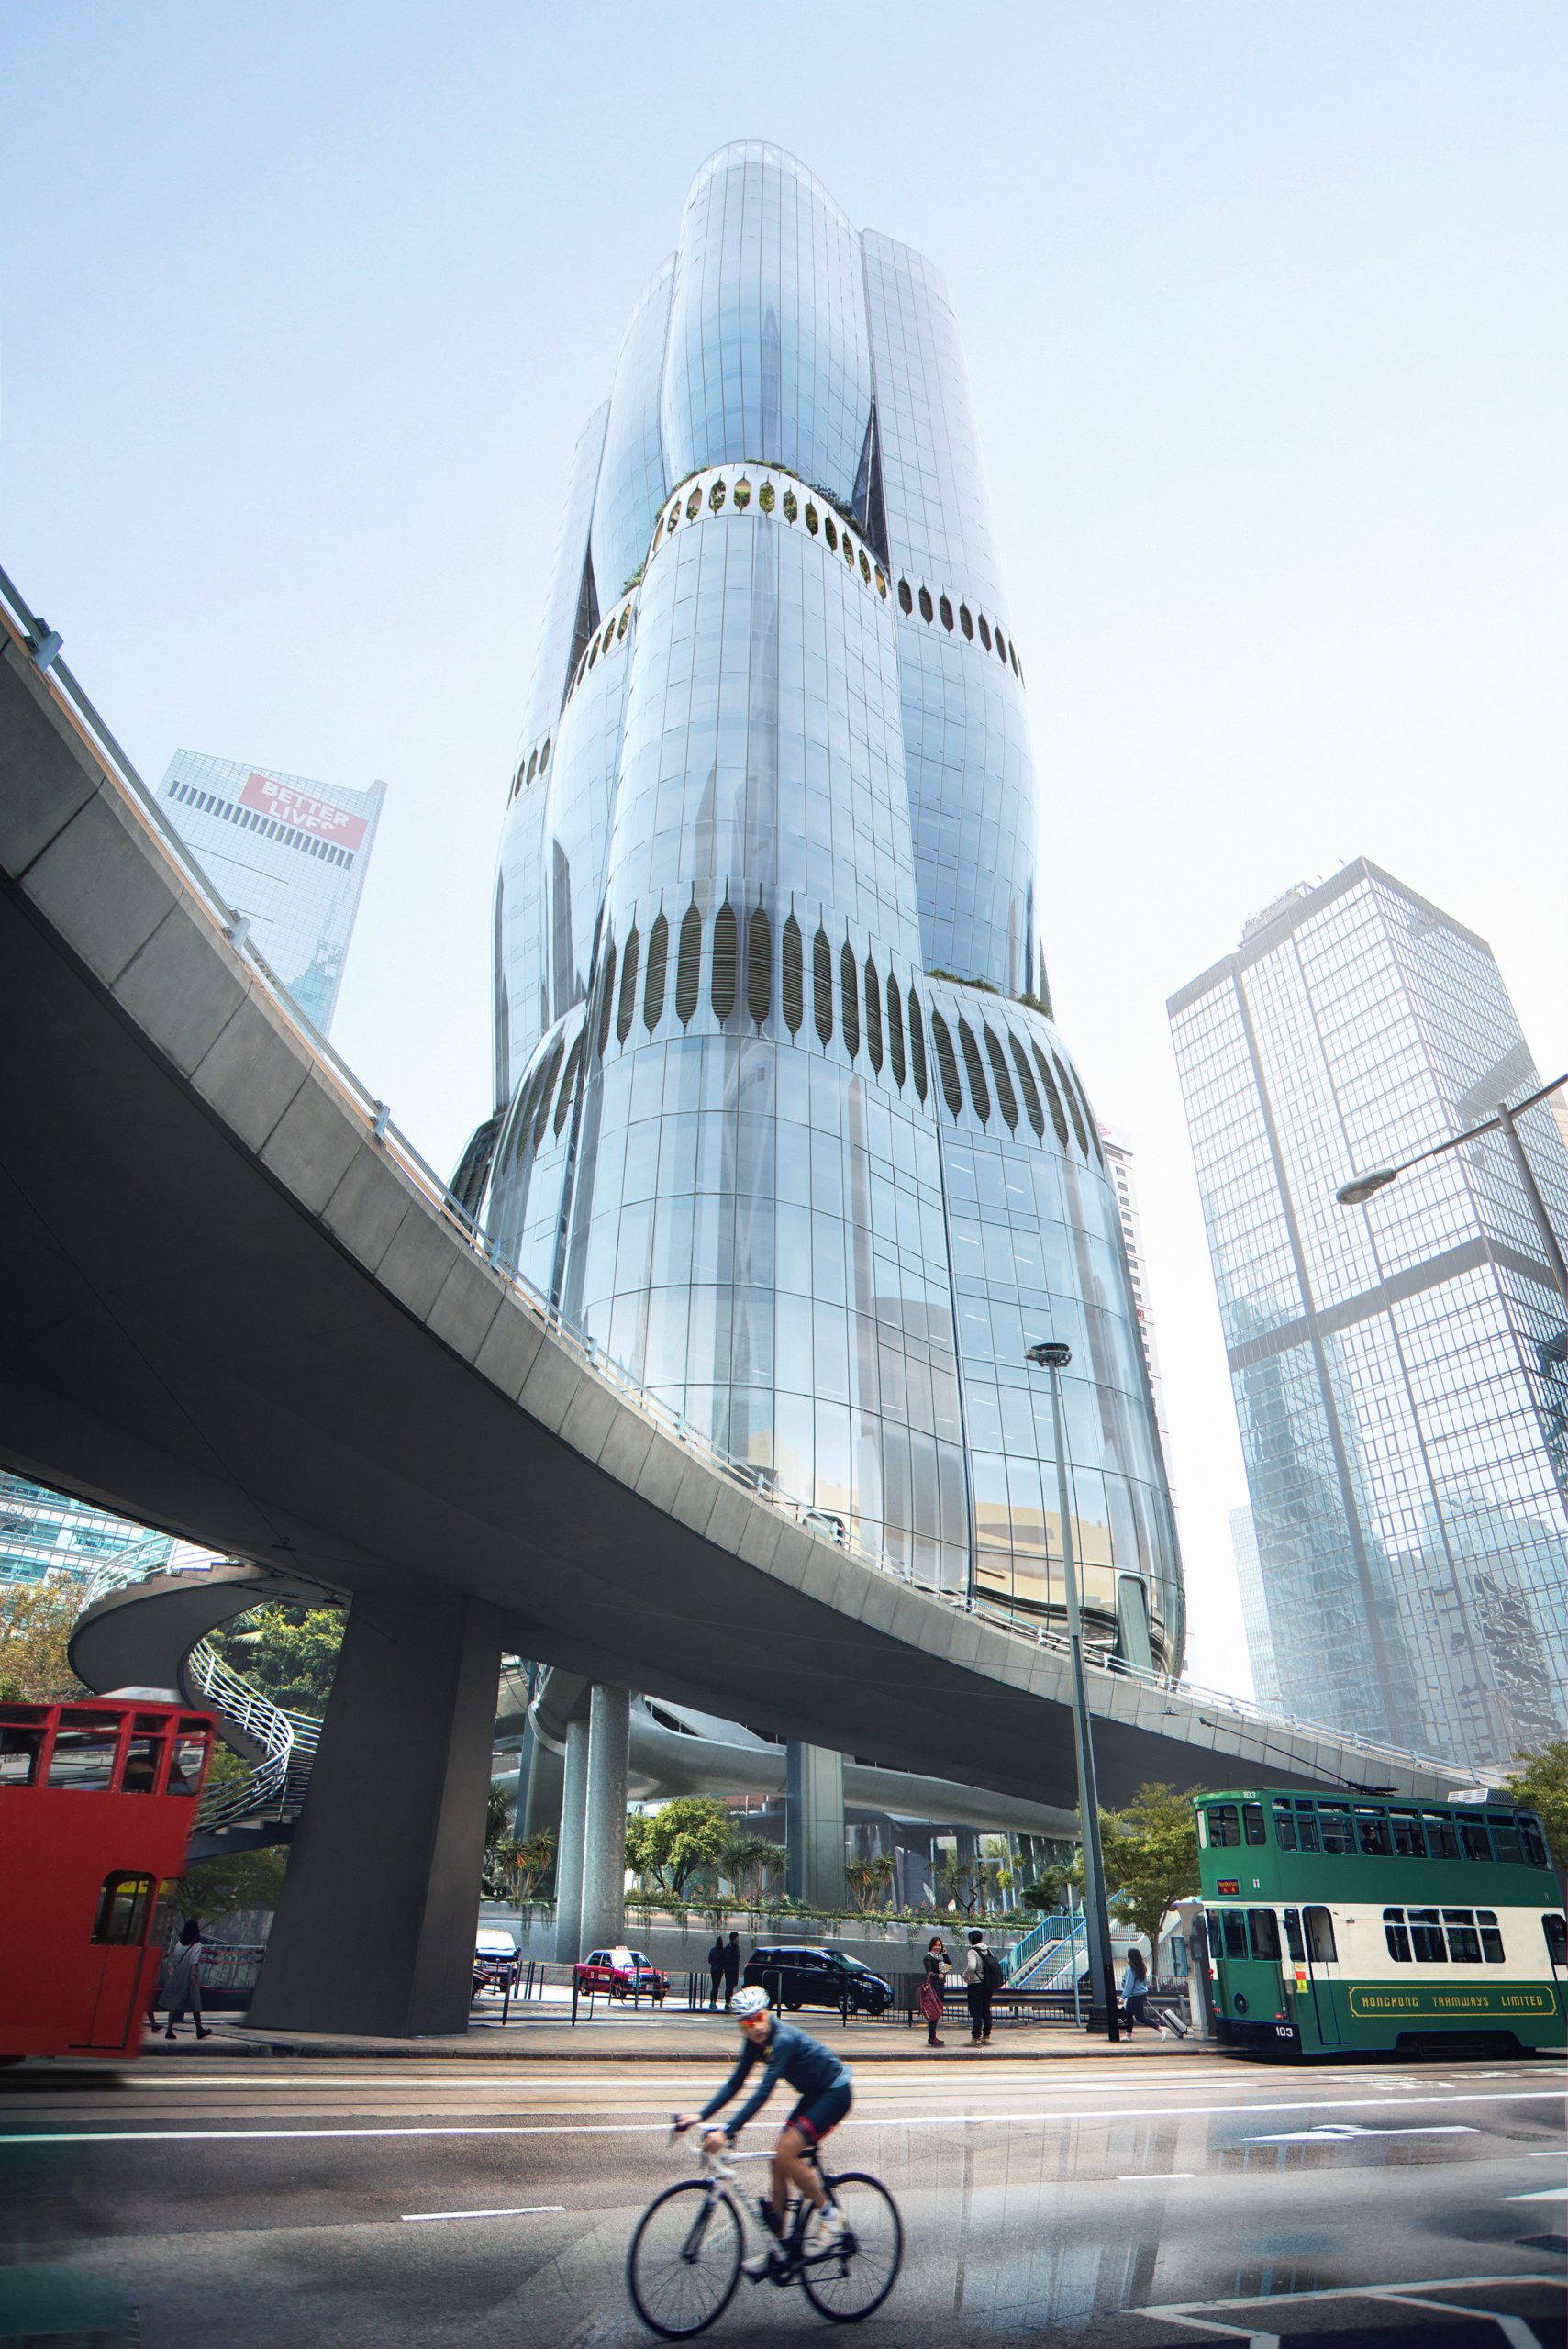 Hong Kong skyscraper looks like Bauhinia bud